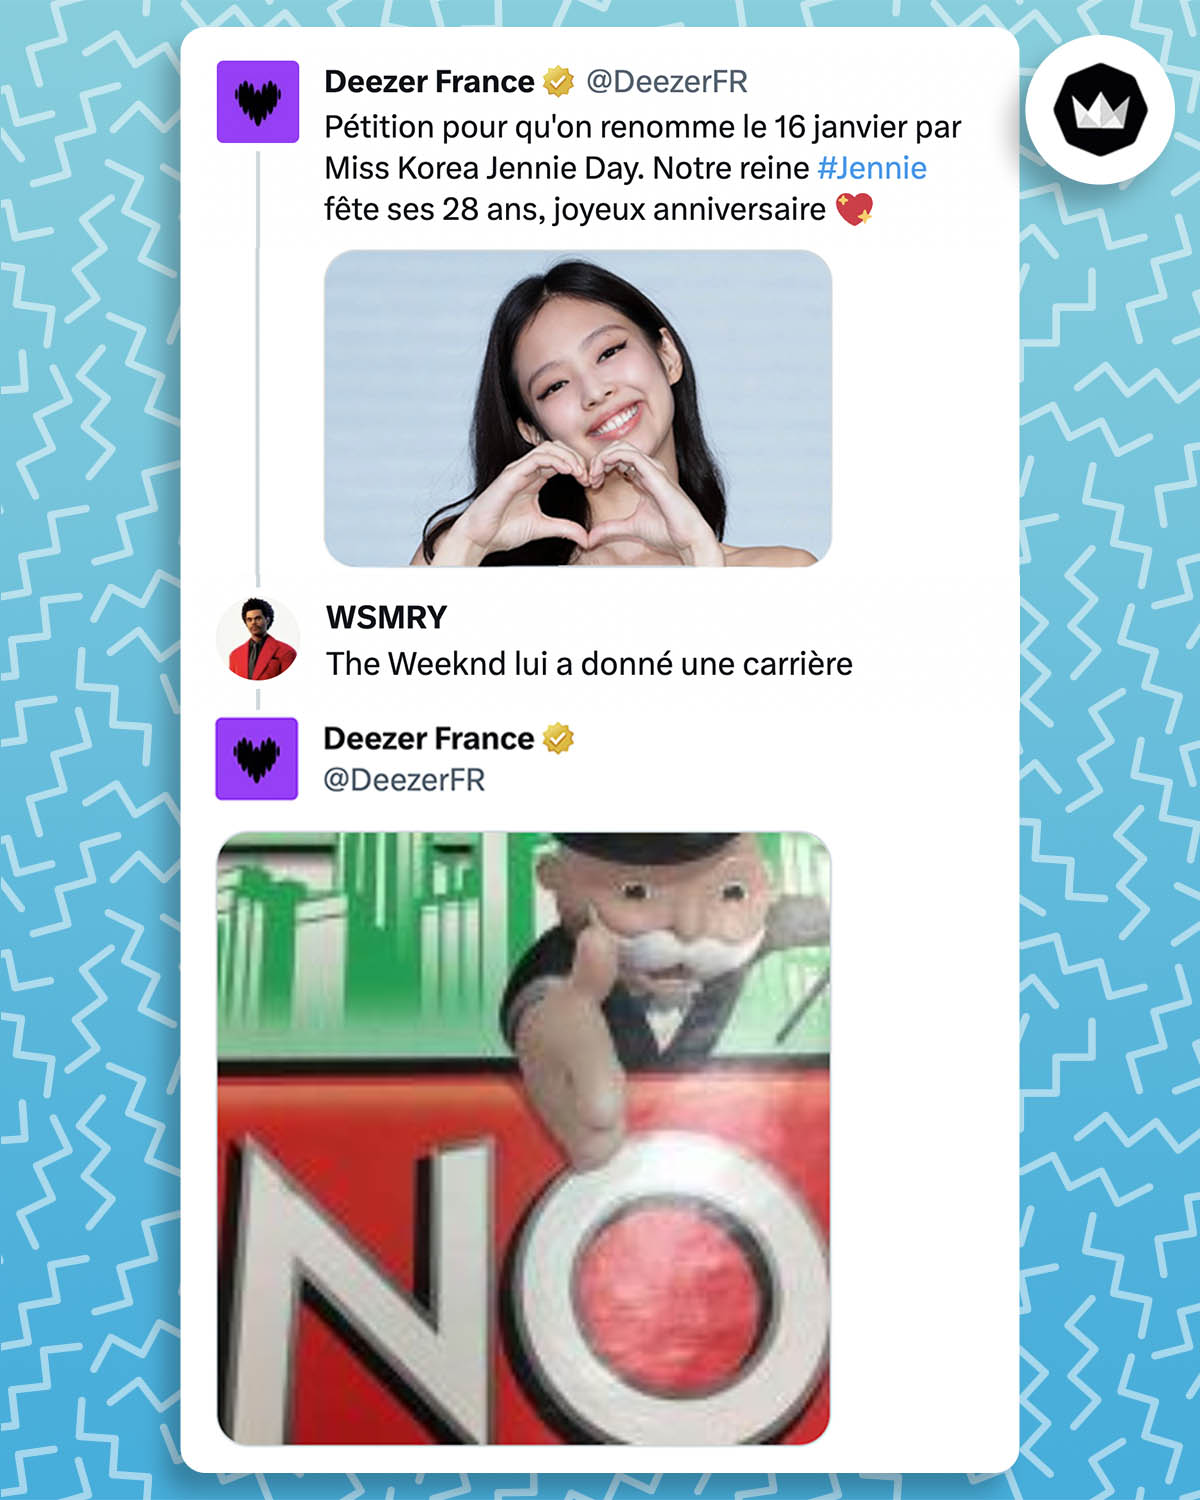 @DeezerFr : "Pétition pour qu'on renomme le 16 janvier par Miss Korea Jennie Day. Notre reine Jennie fête ses 28 ans, joyeux anniversaire" @wesemery_ : The Weeknd lui a donné une carrière @DeezerFr : Meme du bonhomme du jeu Monopoly qui montre le le mot "No"